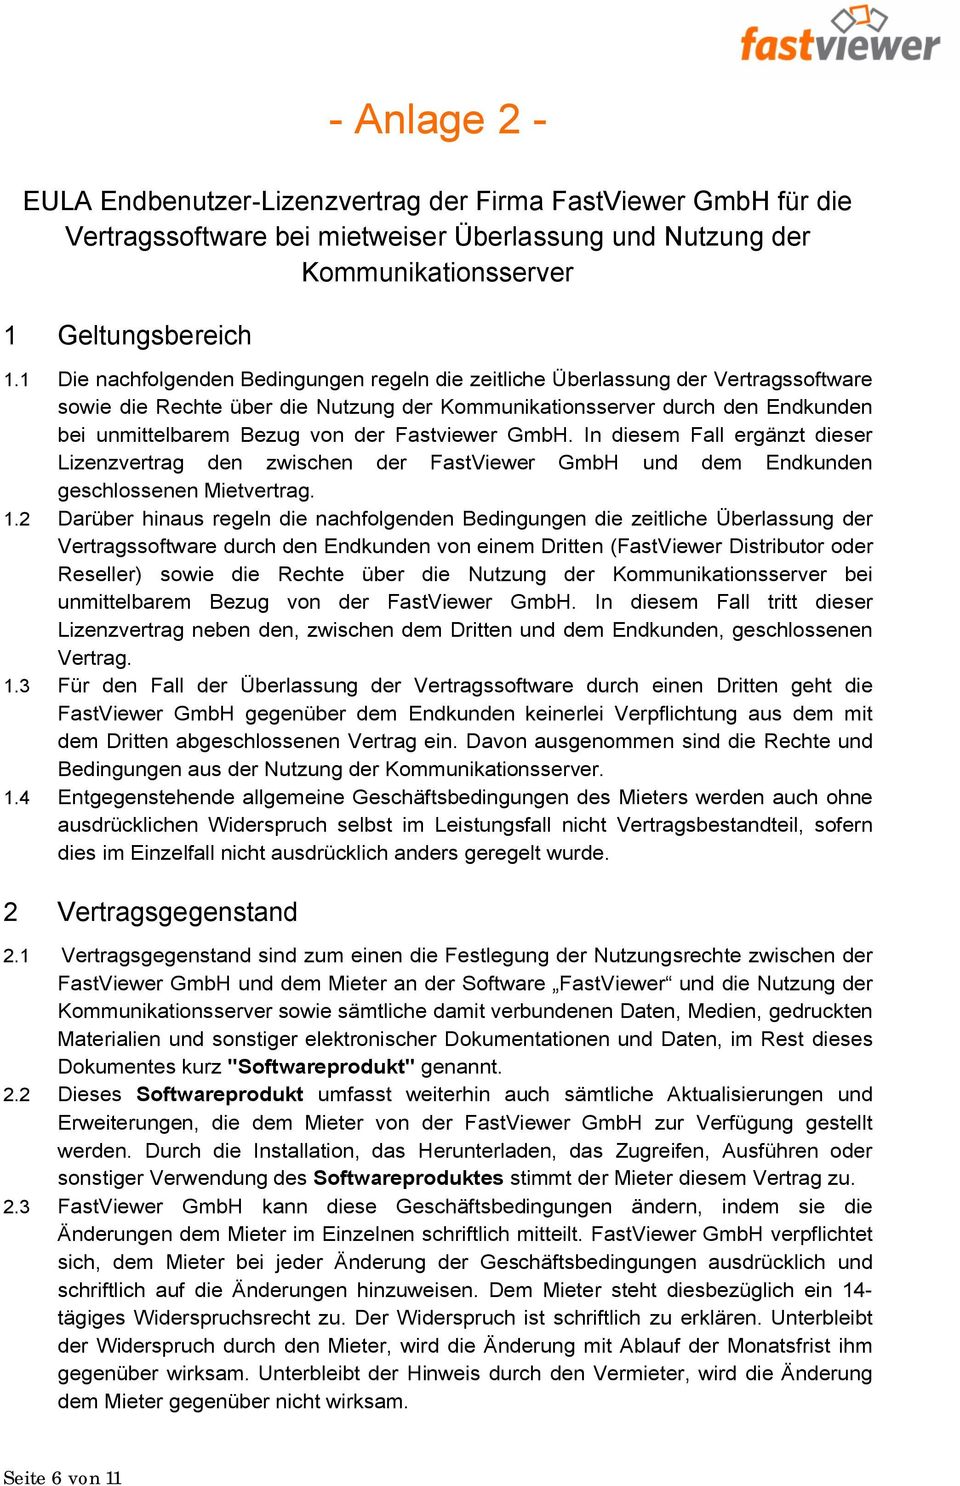 Fastviewer GmbH. In diesem Fall ergänzt dieser Lizenzvertrag den zwischen der FastViewer GmbH und dem Endkunden geschlossenen Mietvertrag. 1.